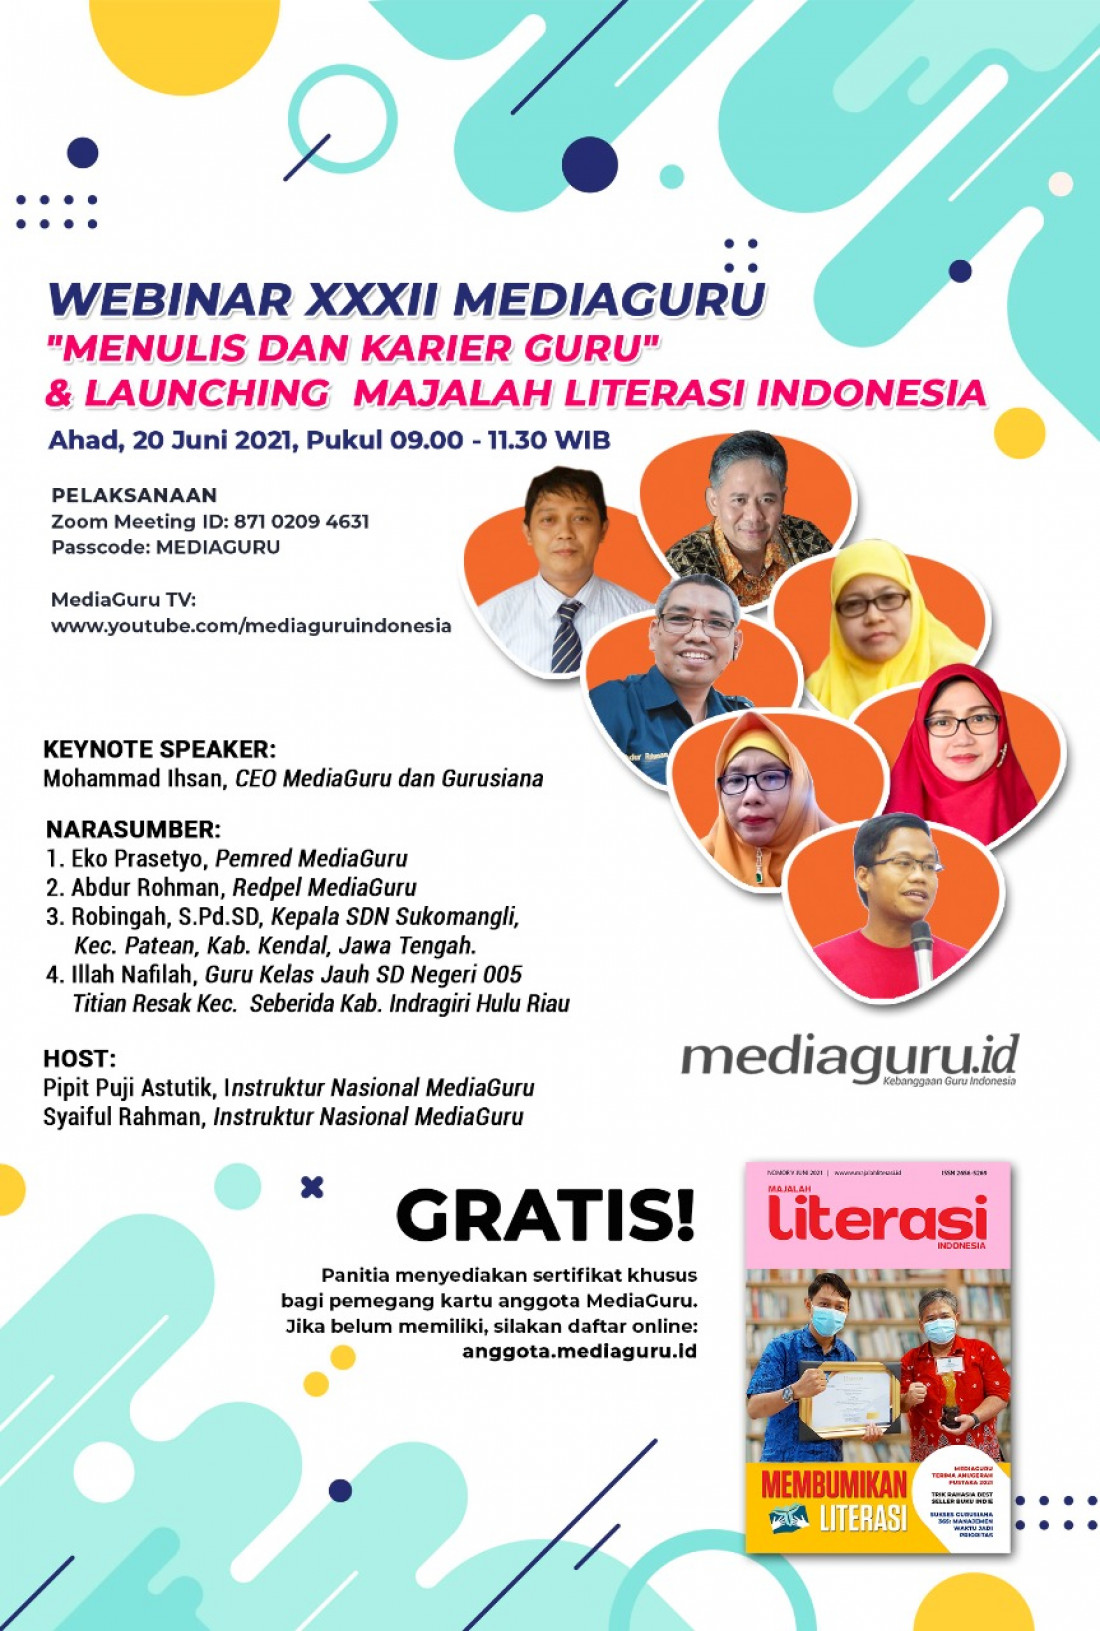 GURU DAN KARIER MENULIS (WEBINAR XXXII MEDIAGURU) & LAUNCHING MAJALAH LITERASI INDONESIA (20 JUNI 2021)